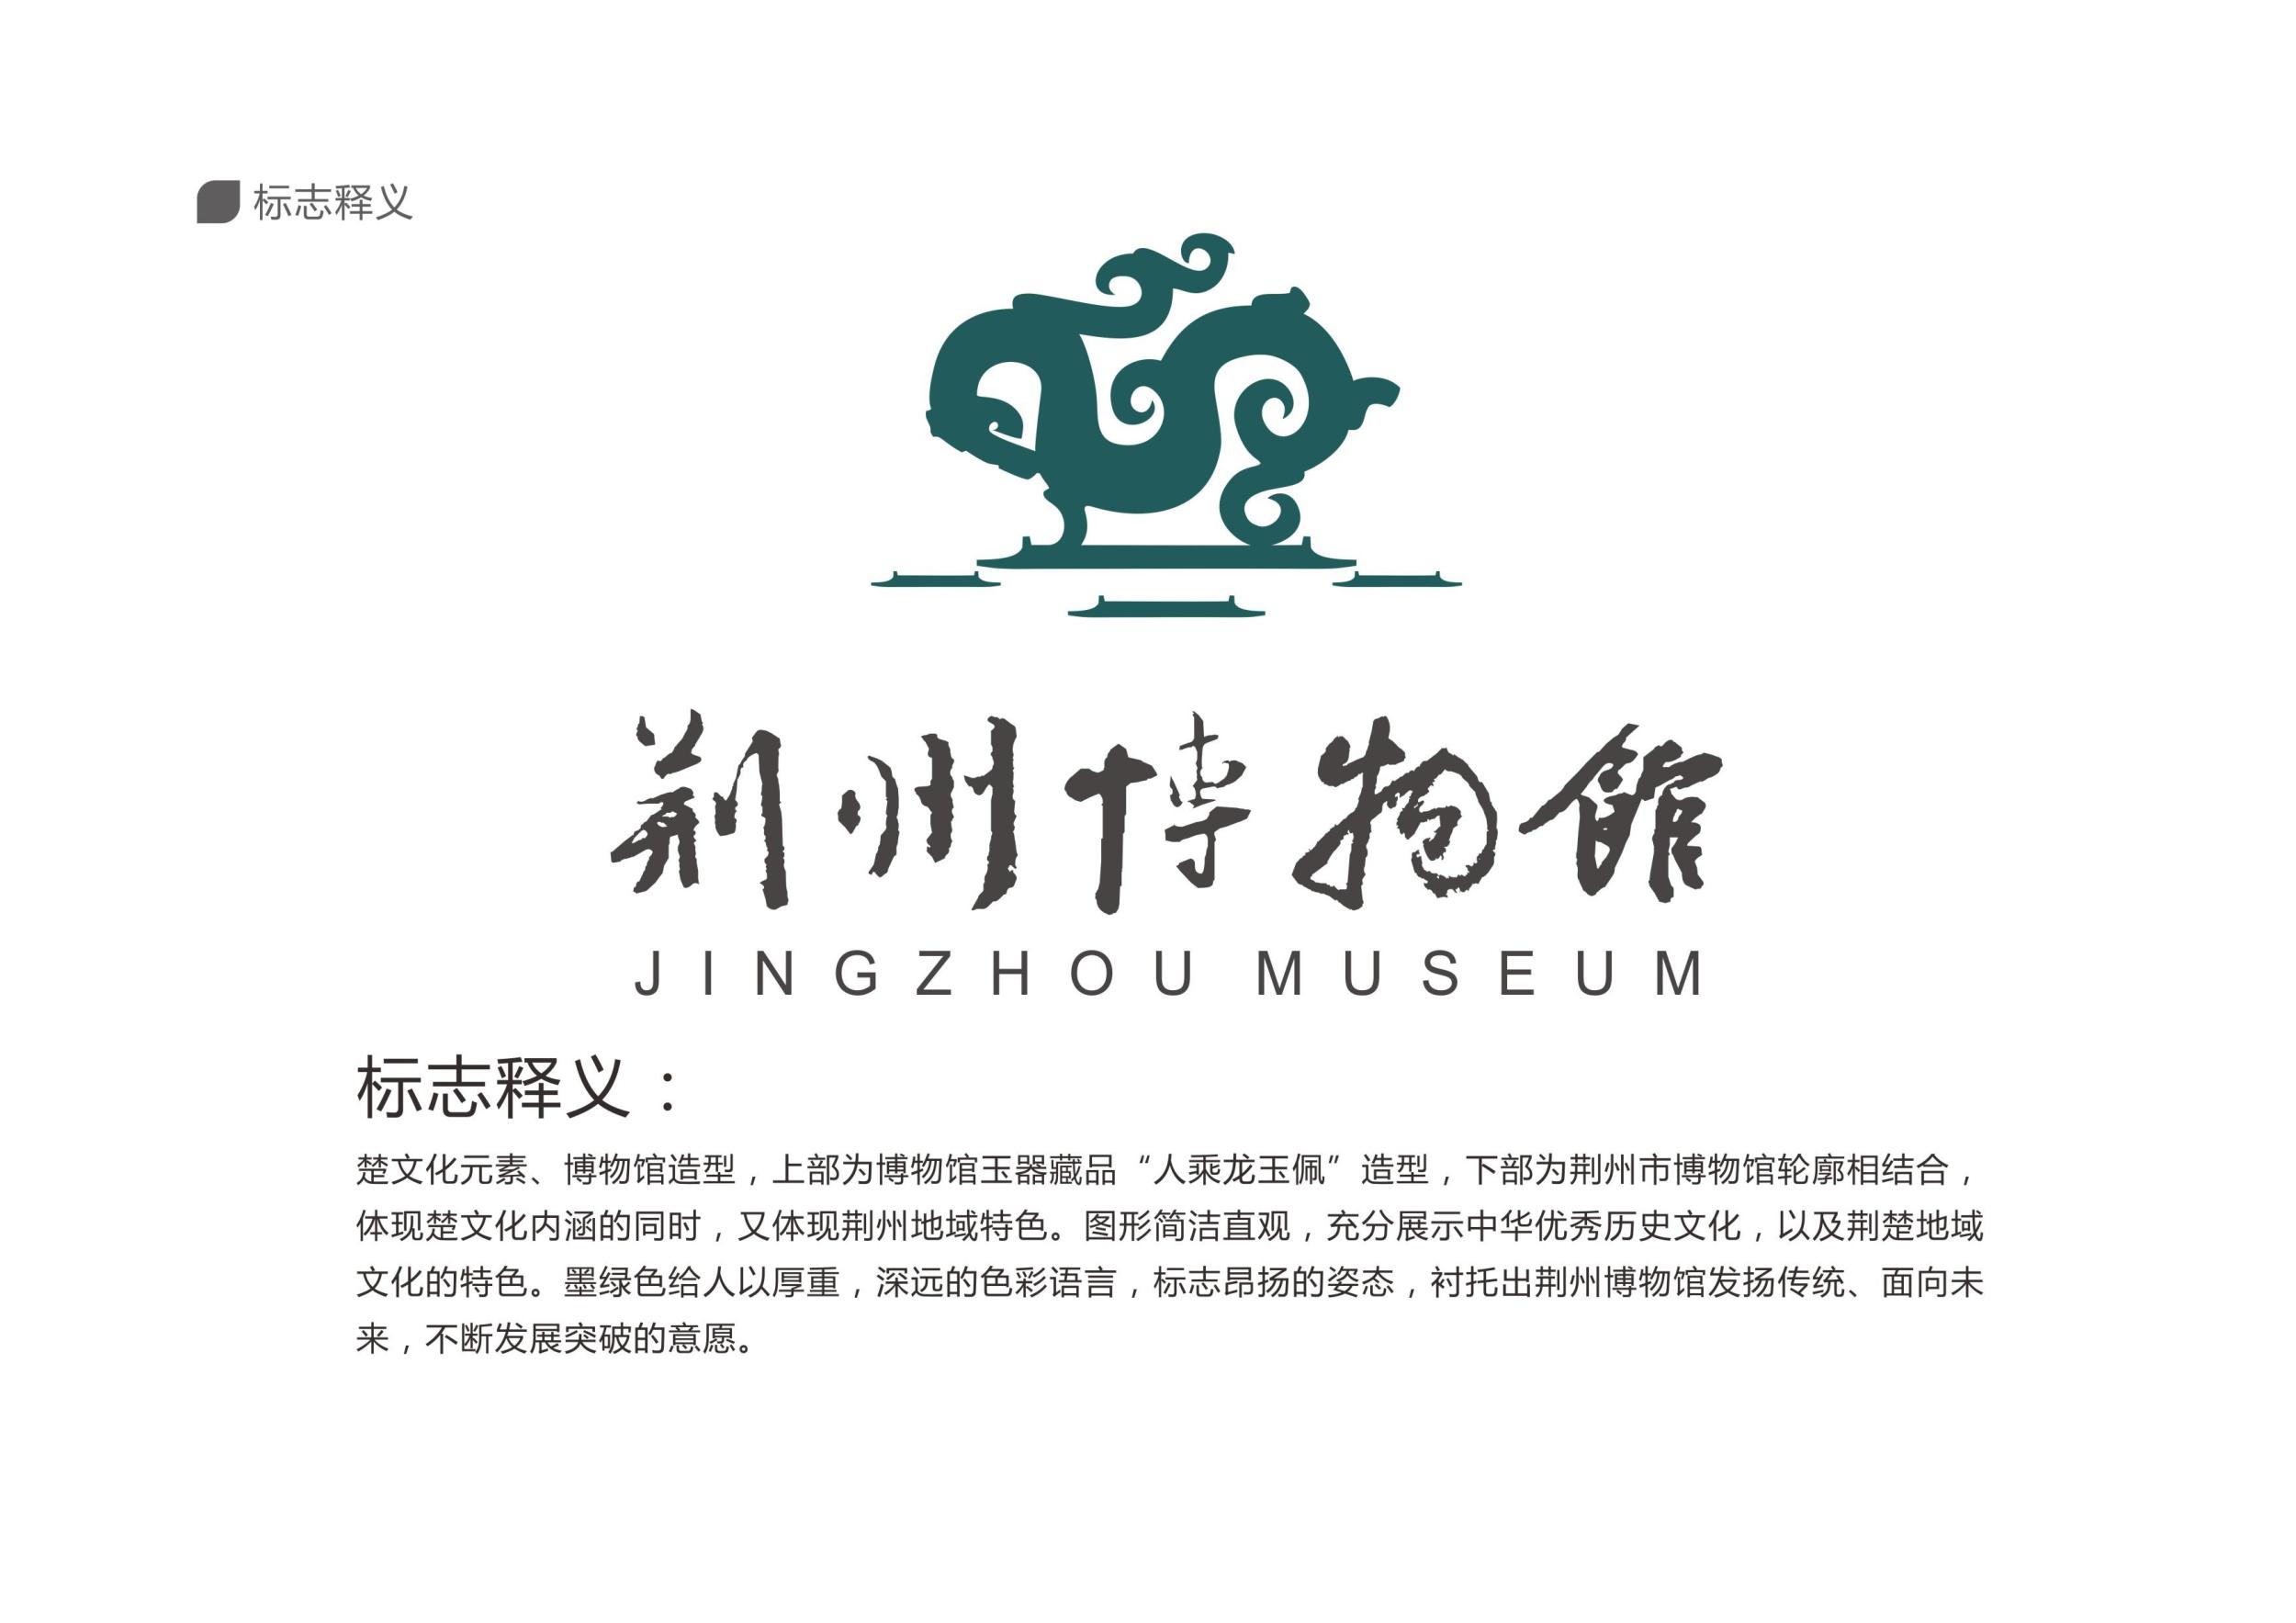 荆州博物馆徽标征集活动 初选10件作品入围(图)